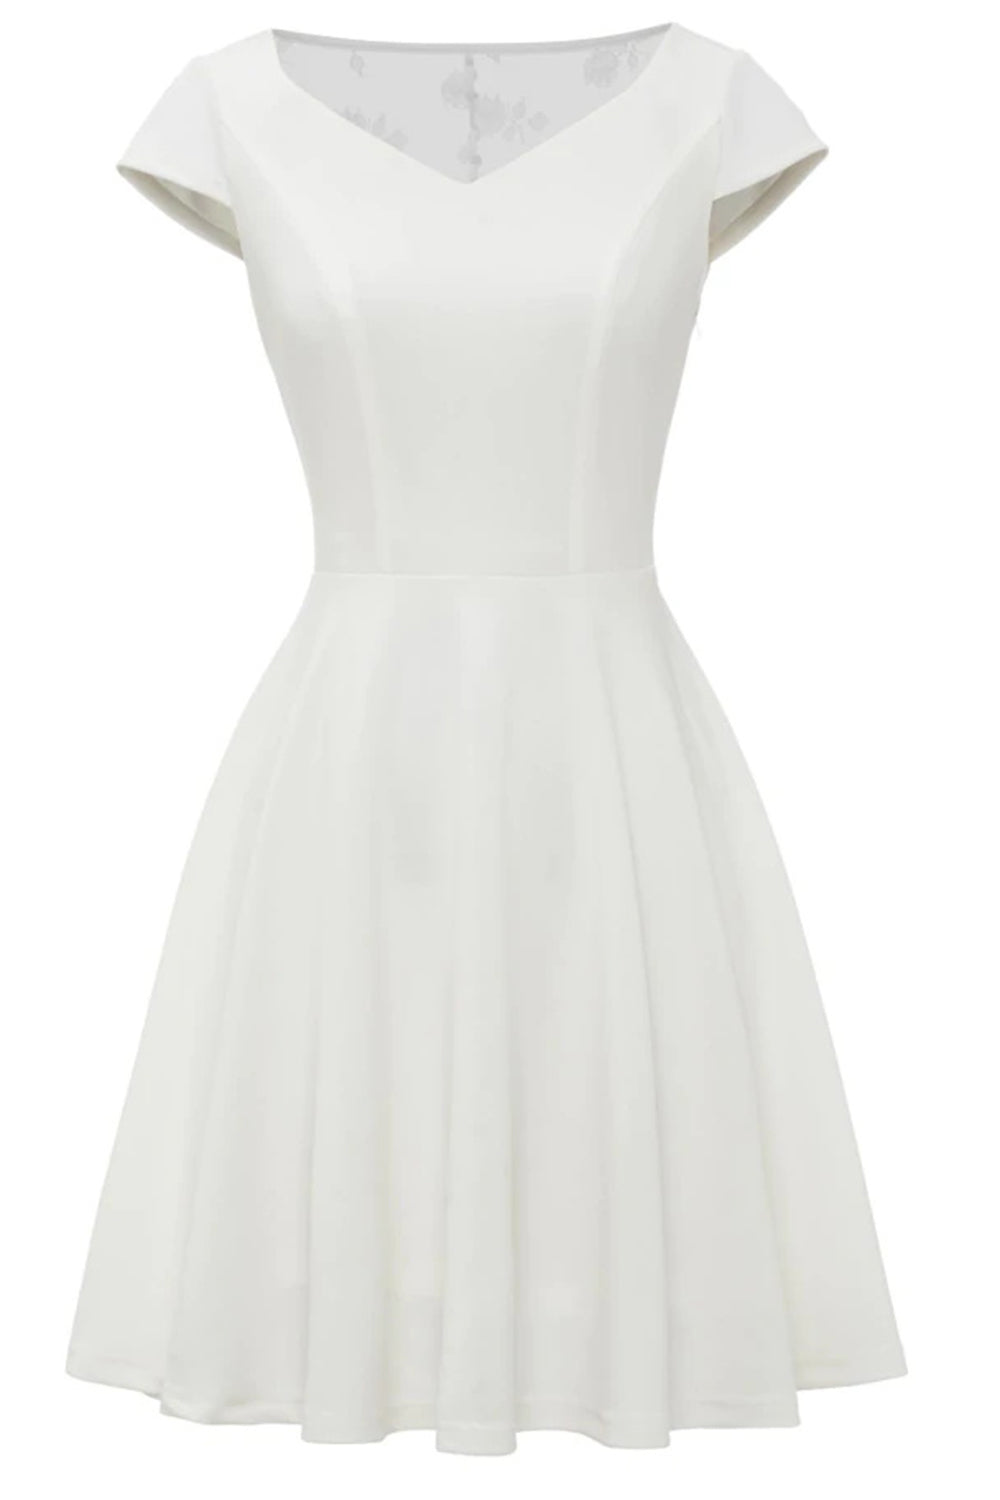 A-Linie Weißes Spitze Vintage Kleid